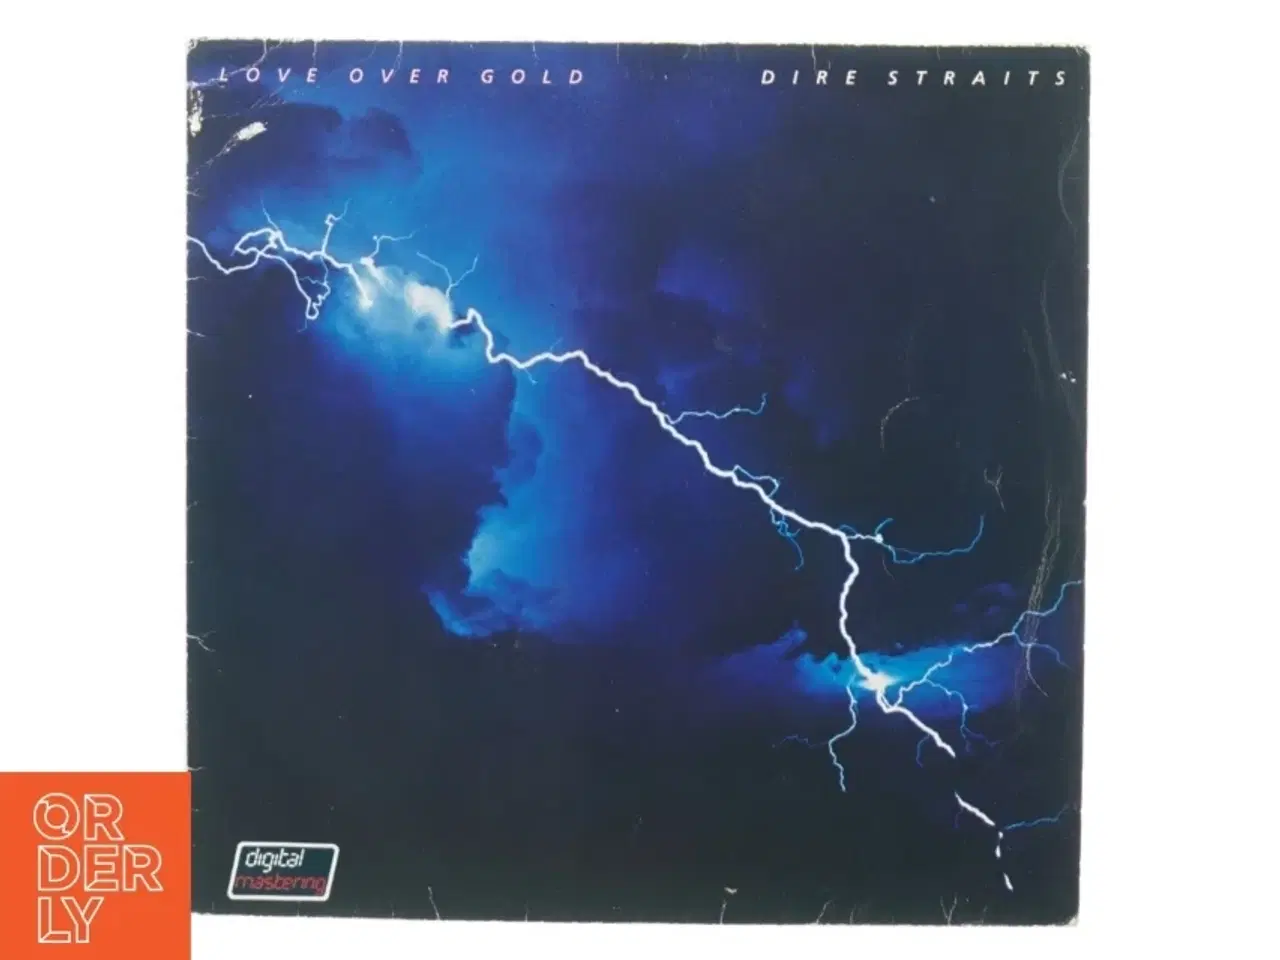 Billede 1 - Dire Straits: Love over gold (LP) fra Vertigo (str. 30 cm)